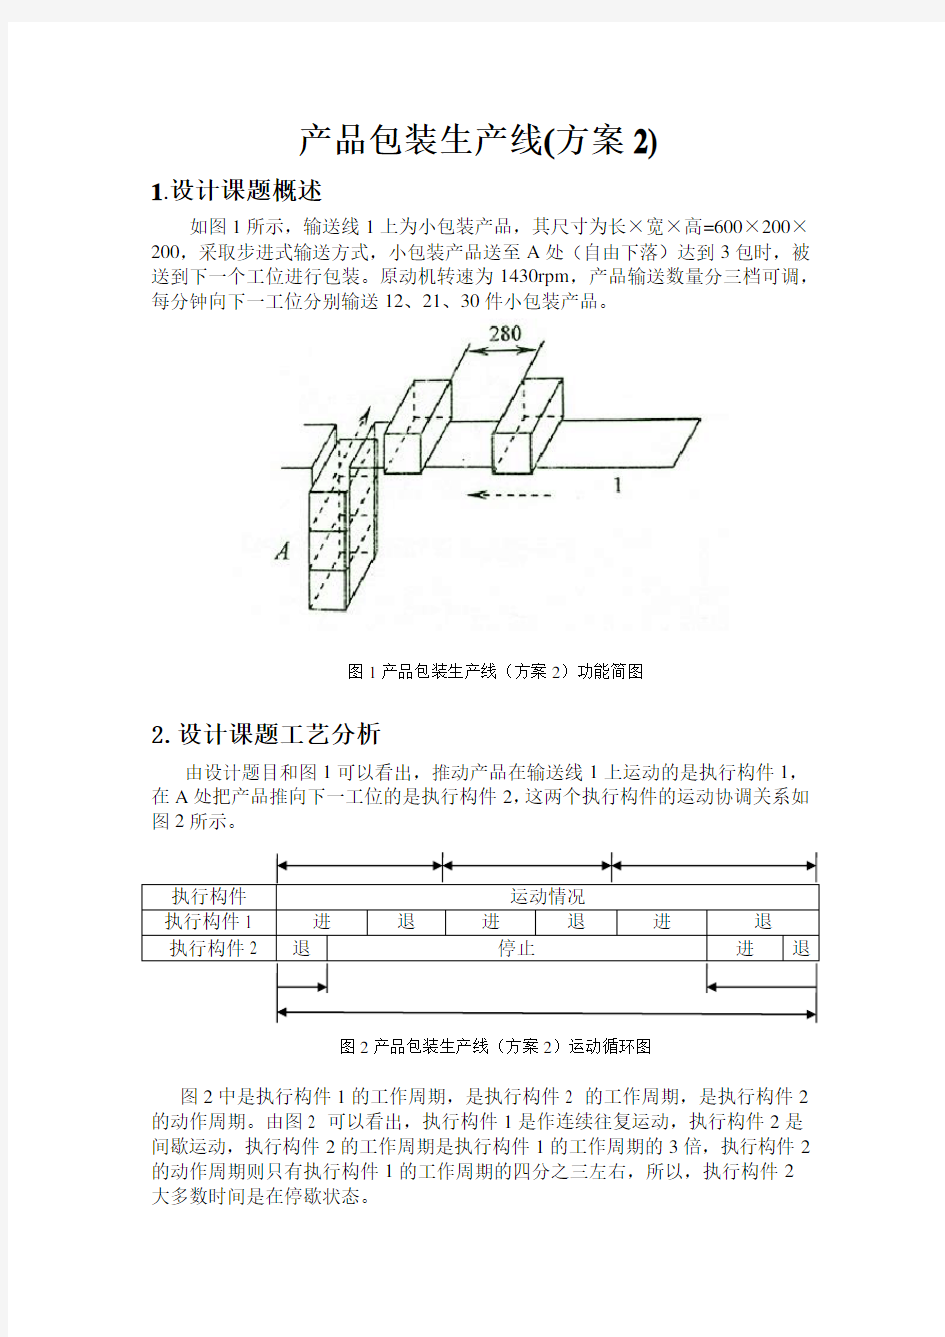 哈工大机械原理课程设计产品包装线设计(方案2)